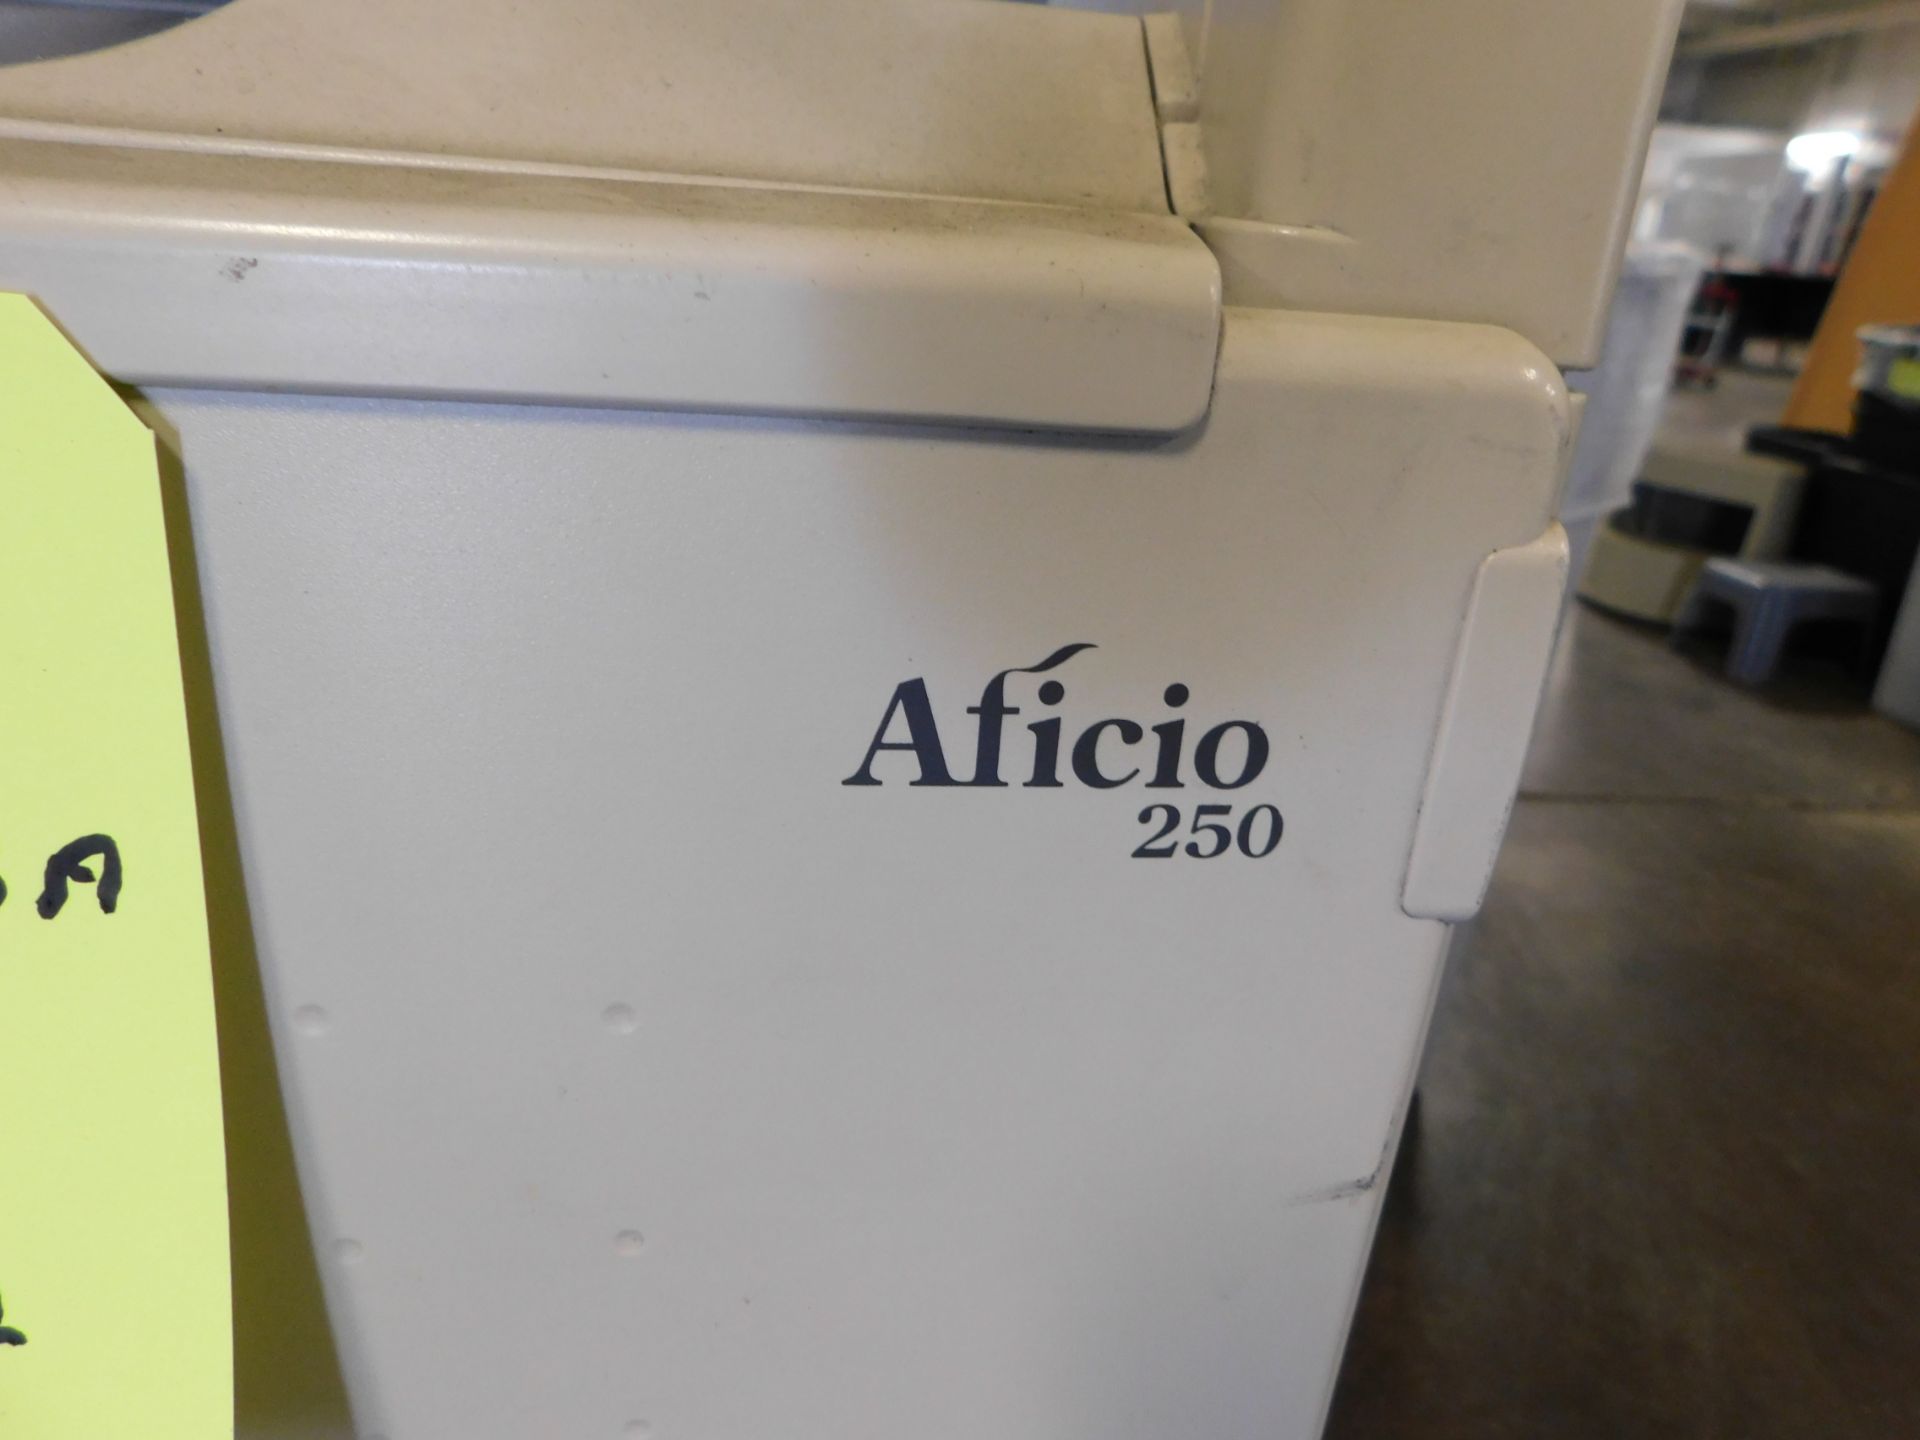 Ricoh Aficio 250 Copier - Image 4 of 4